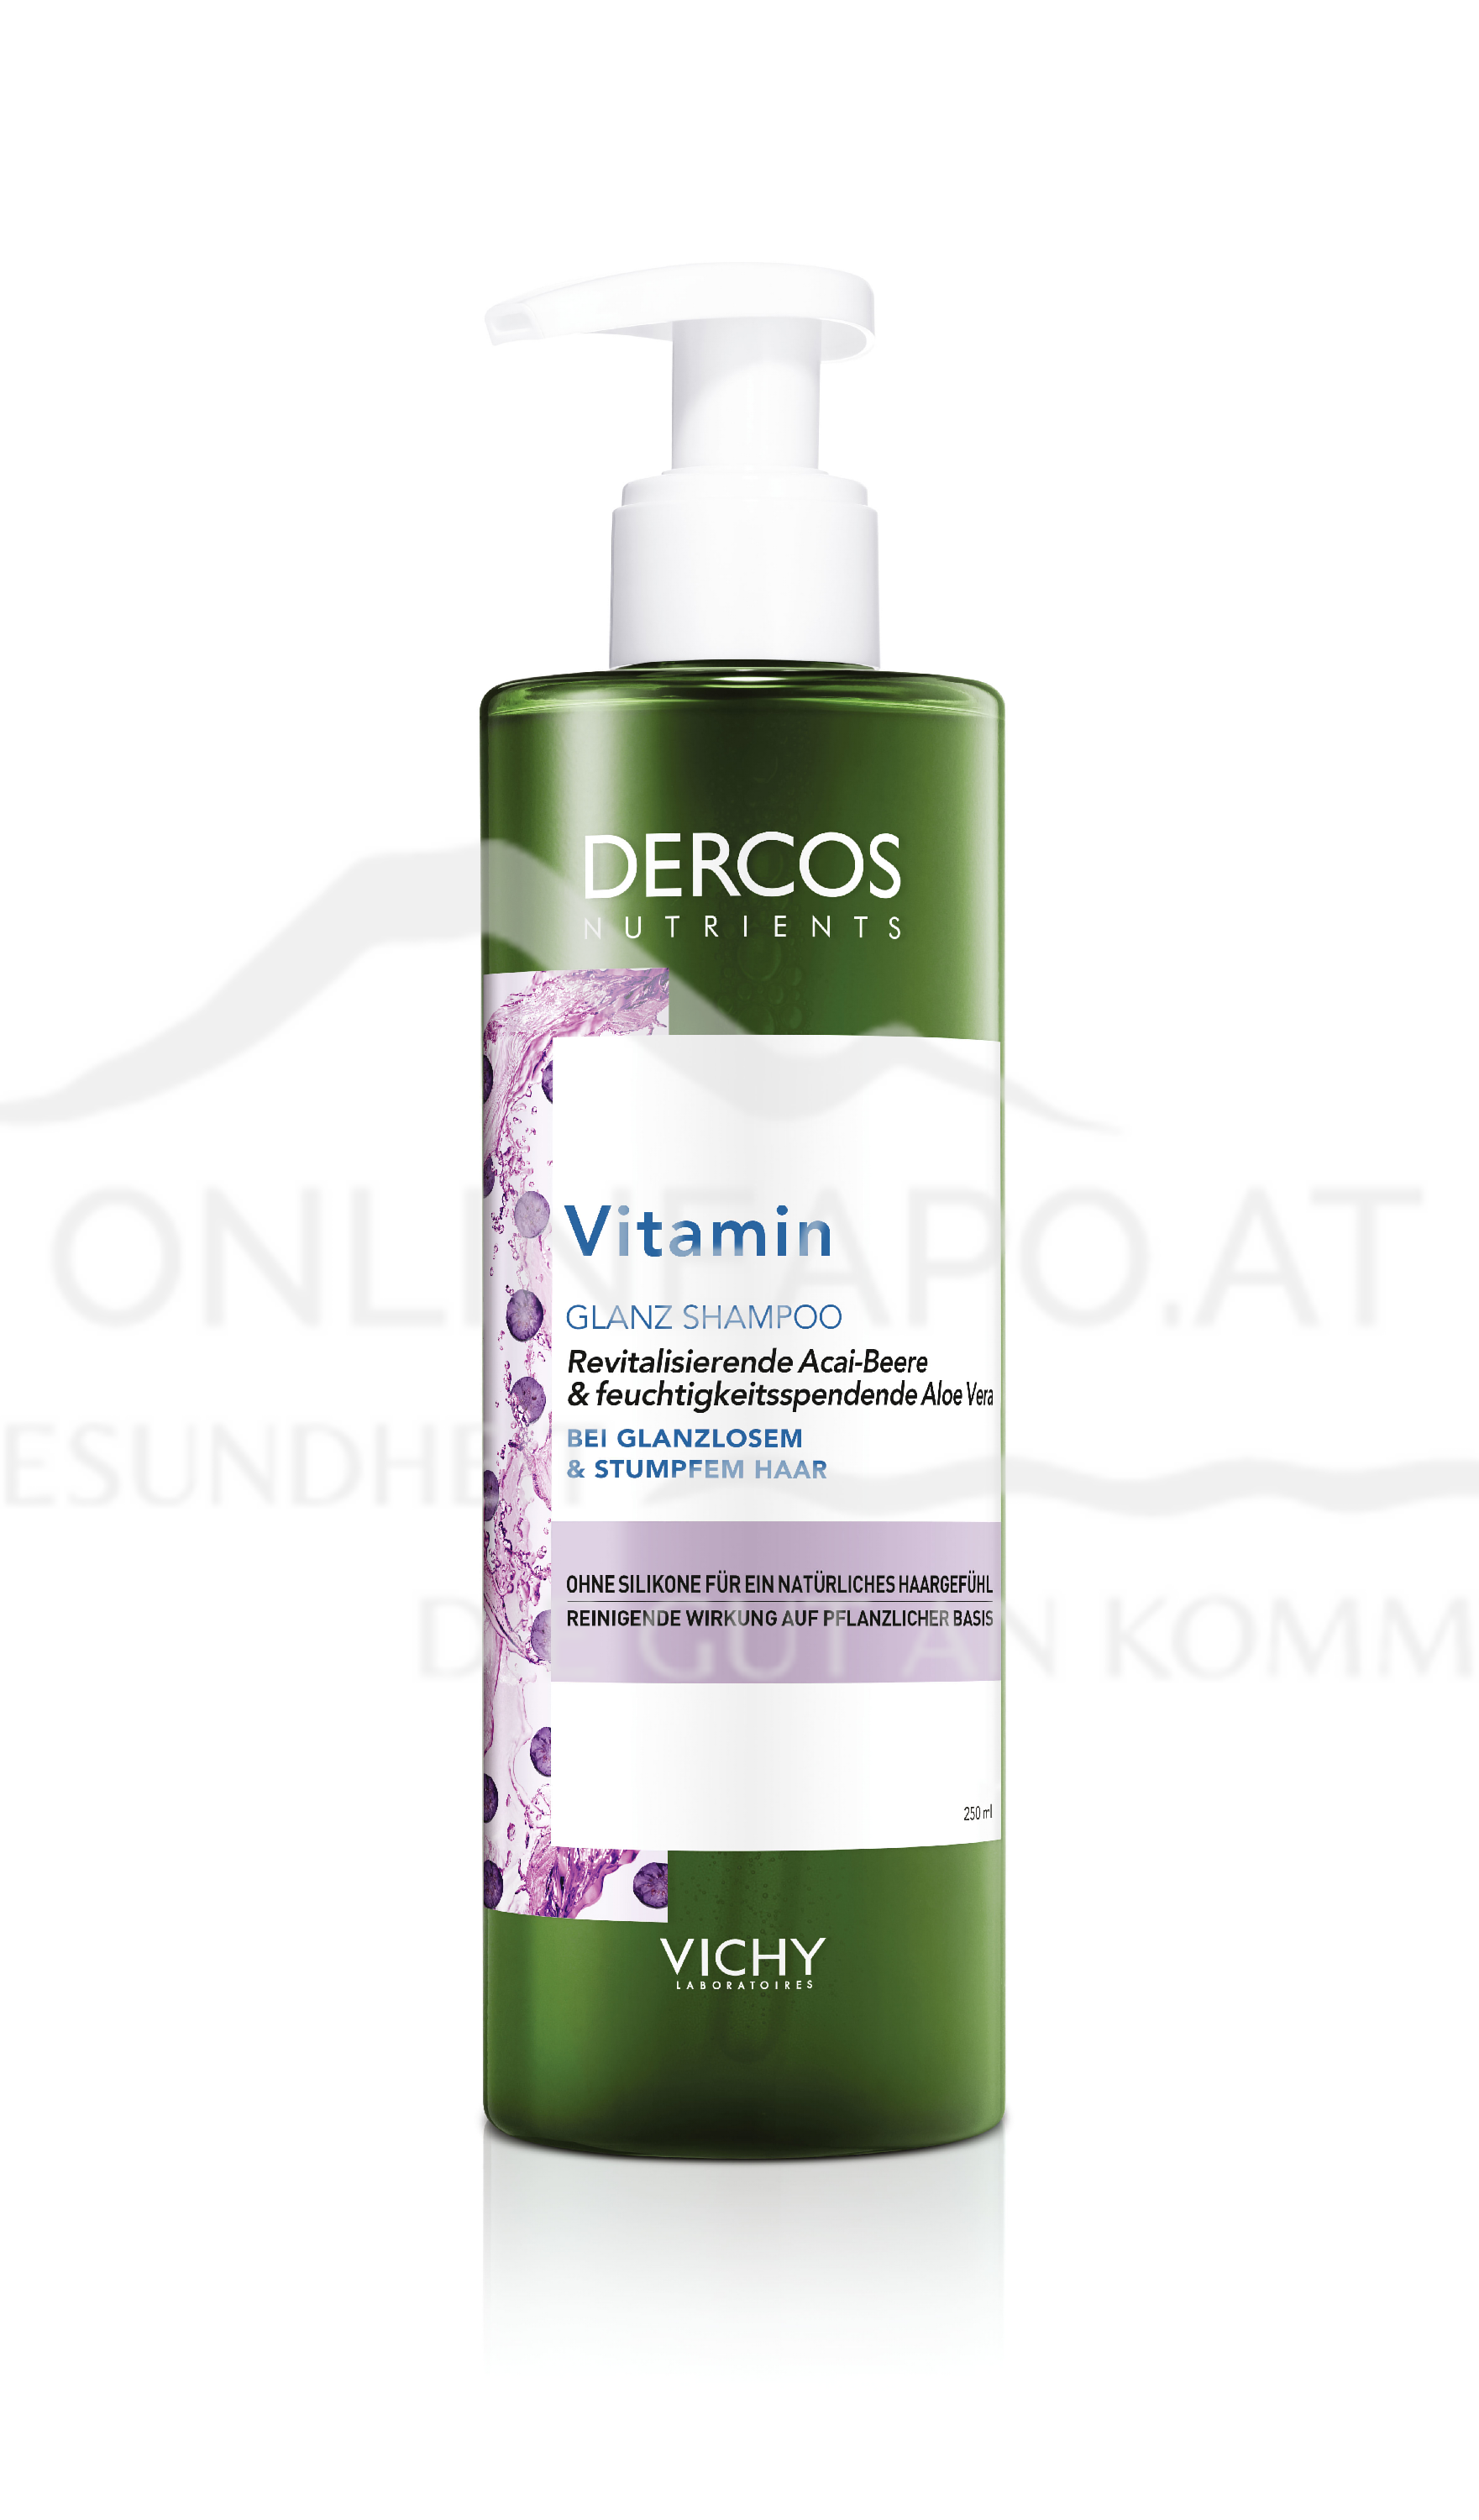 VICHY Dercos Nutrients Vitamin Glanz-Shampoo